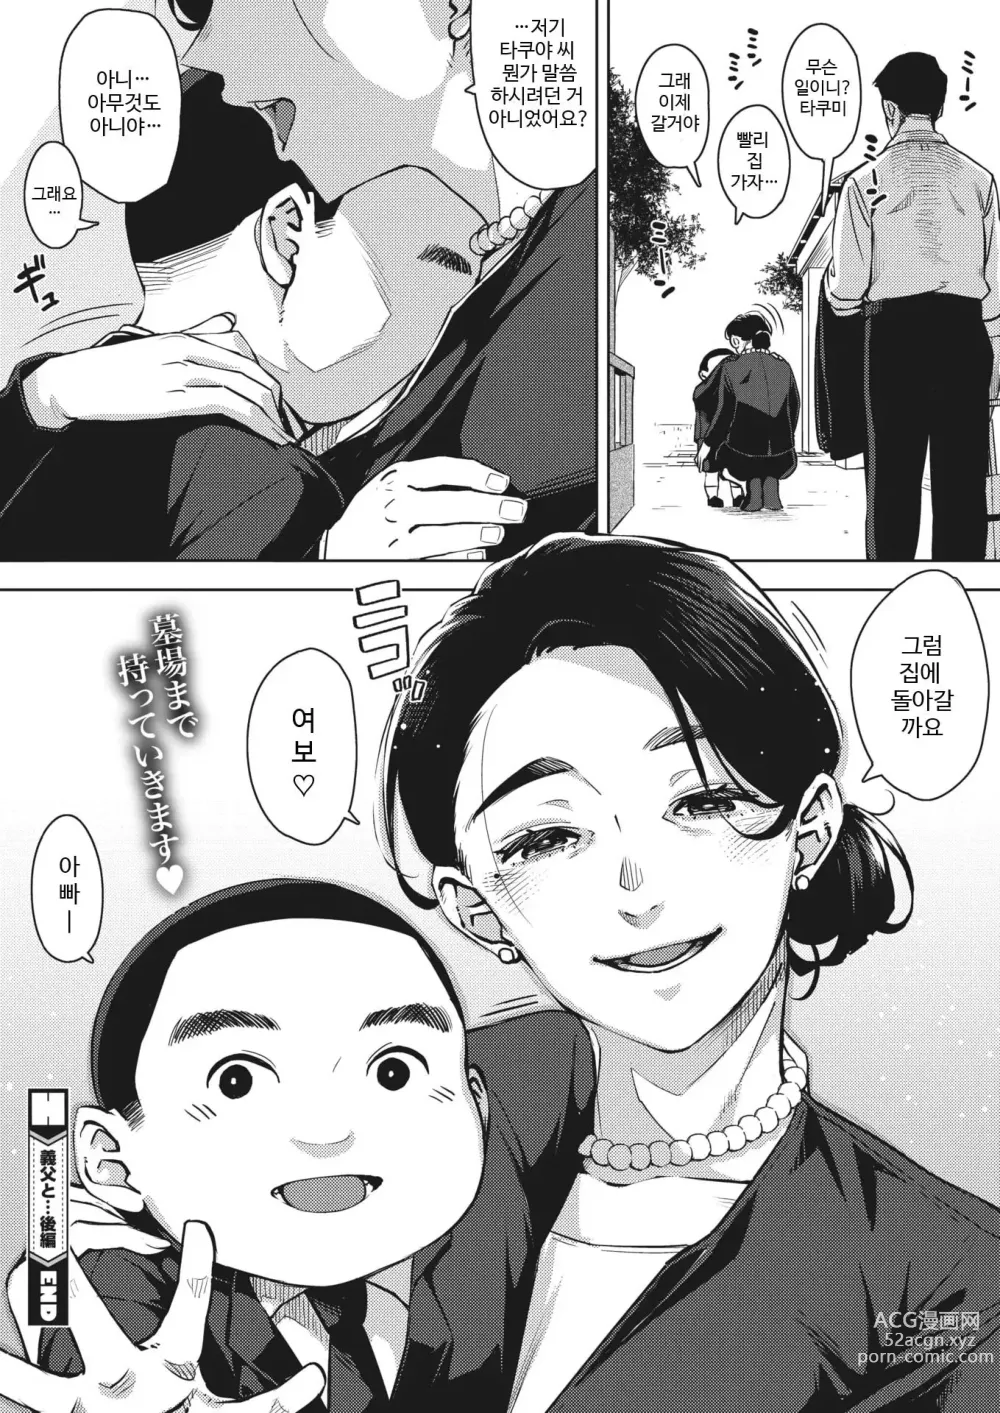 Page 201 of manga Hitozuma no Koukishin